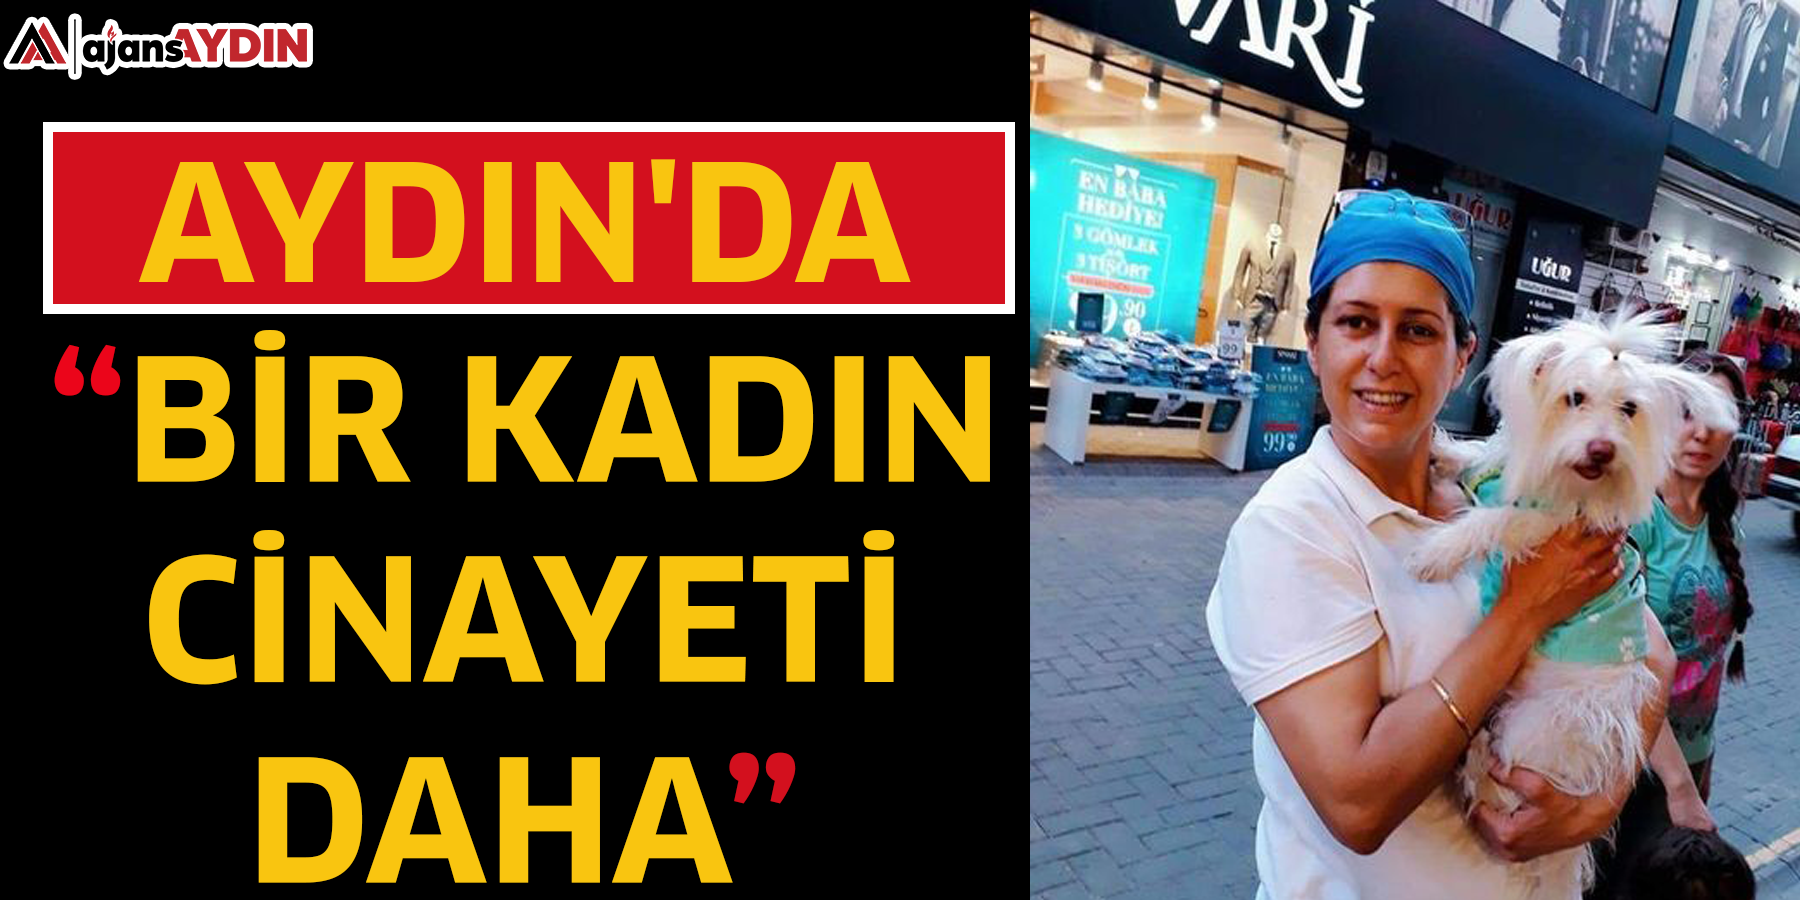 Aydın'da bir kadın cinayeti daha